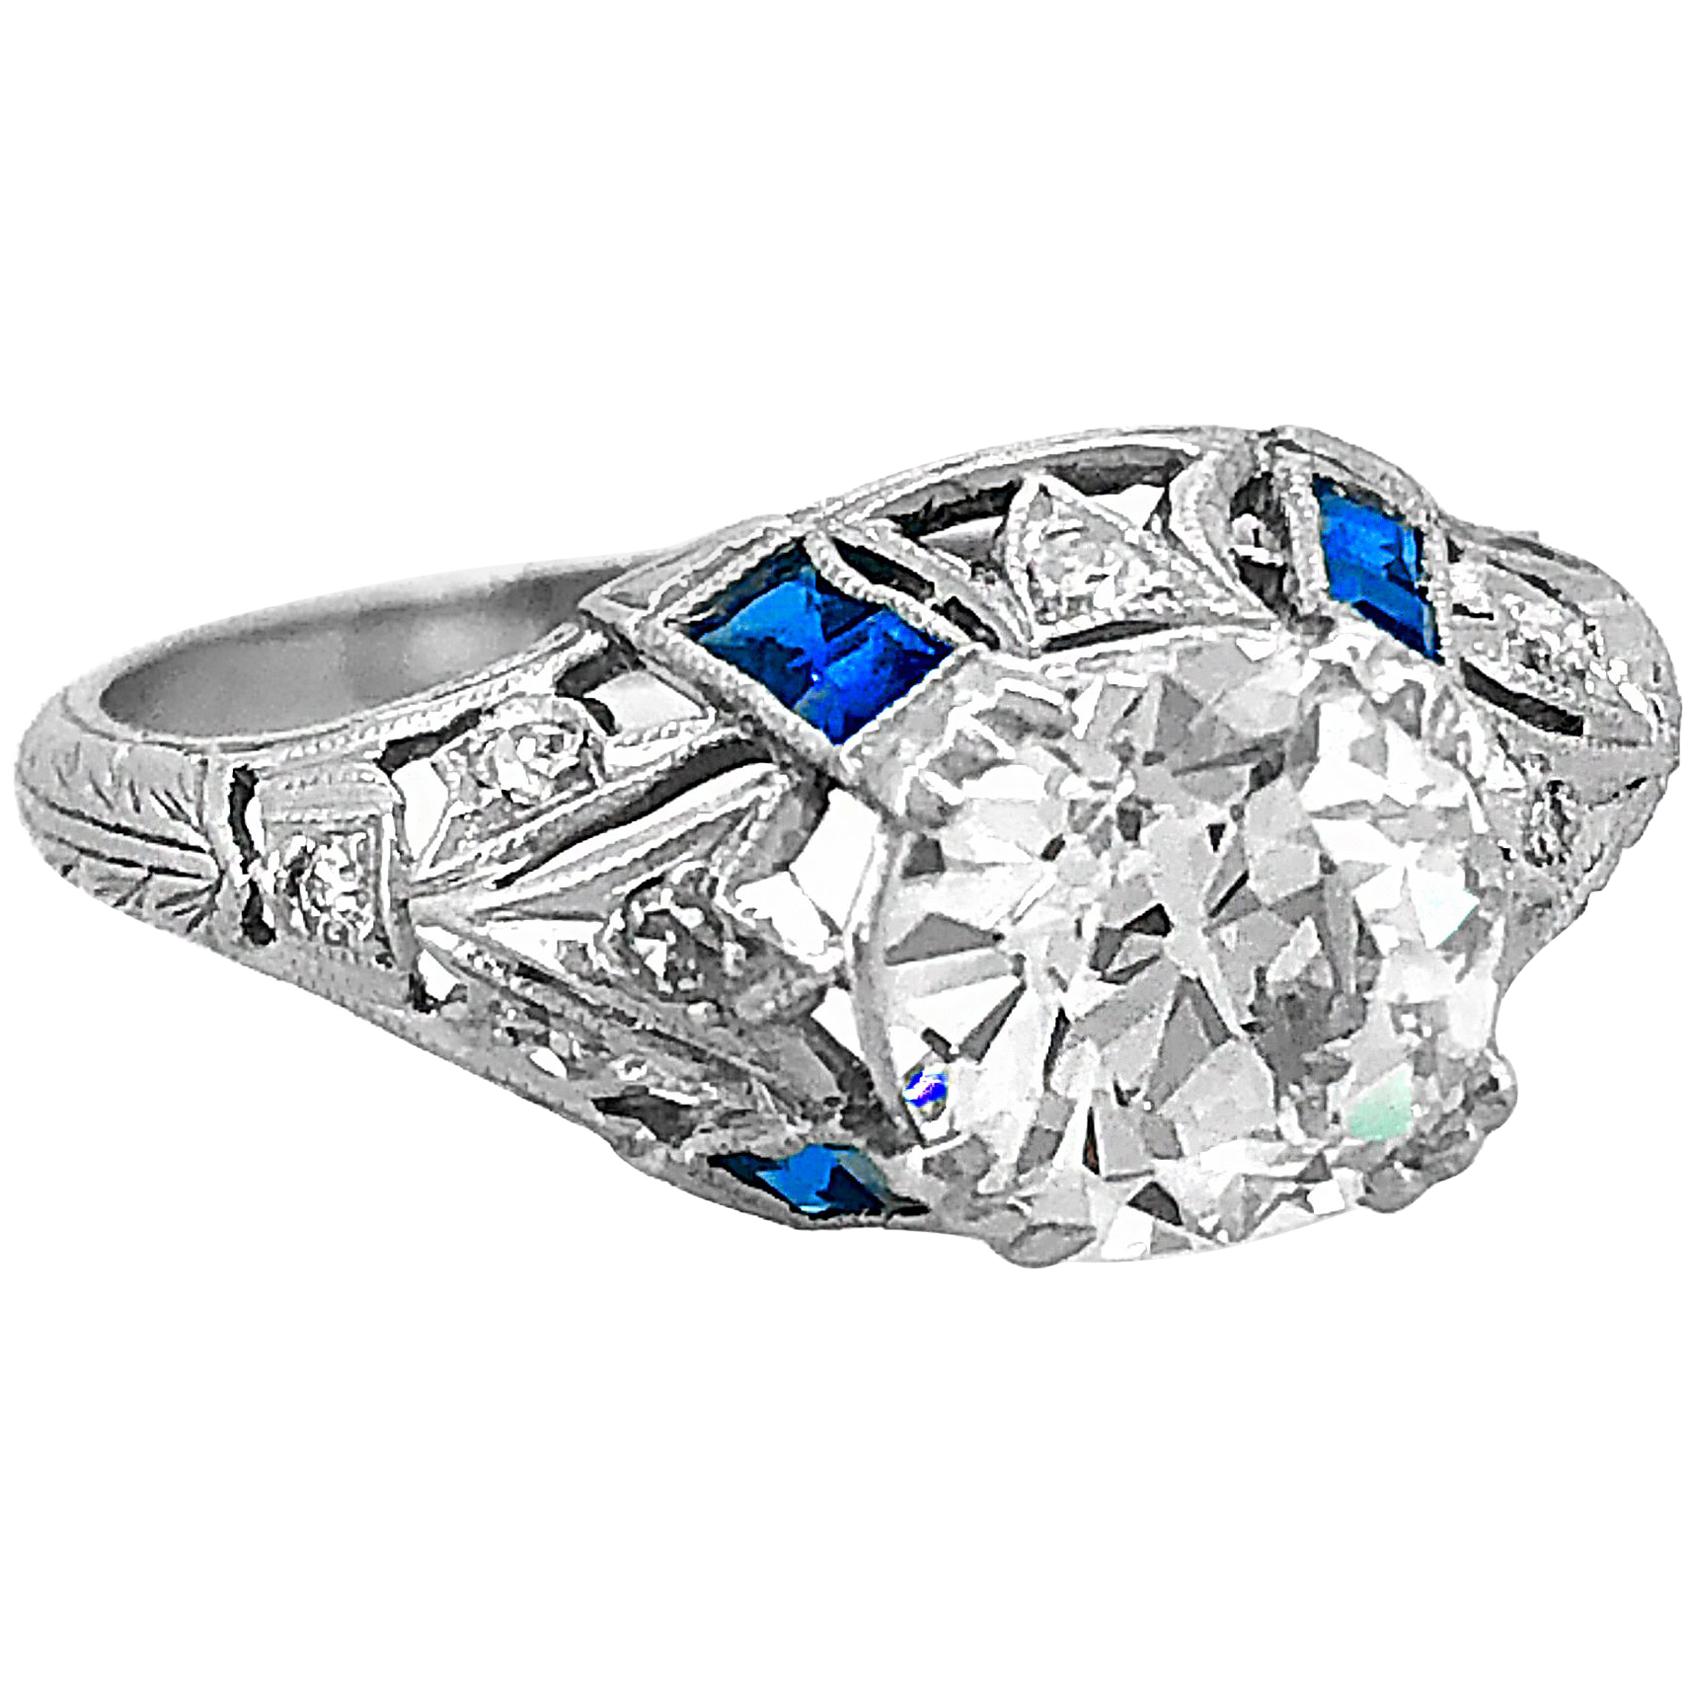 Antique 1.75 Carat Diamond and Sapphire Art Deco Engagement Ring Platinum